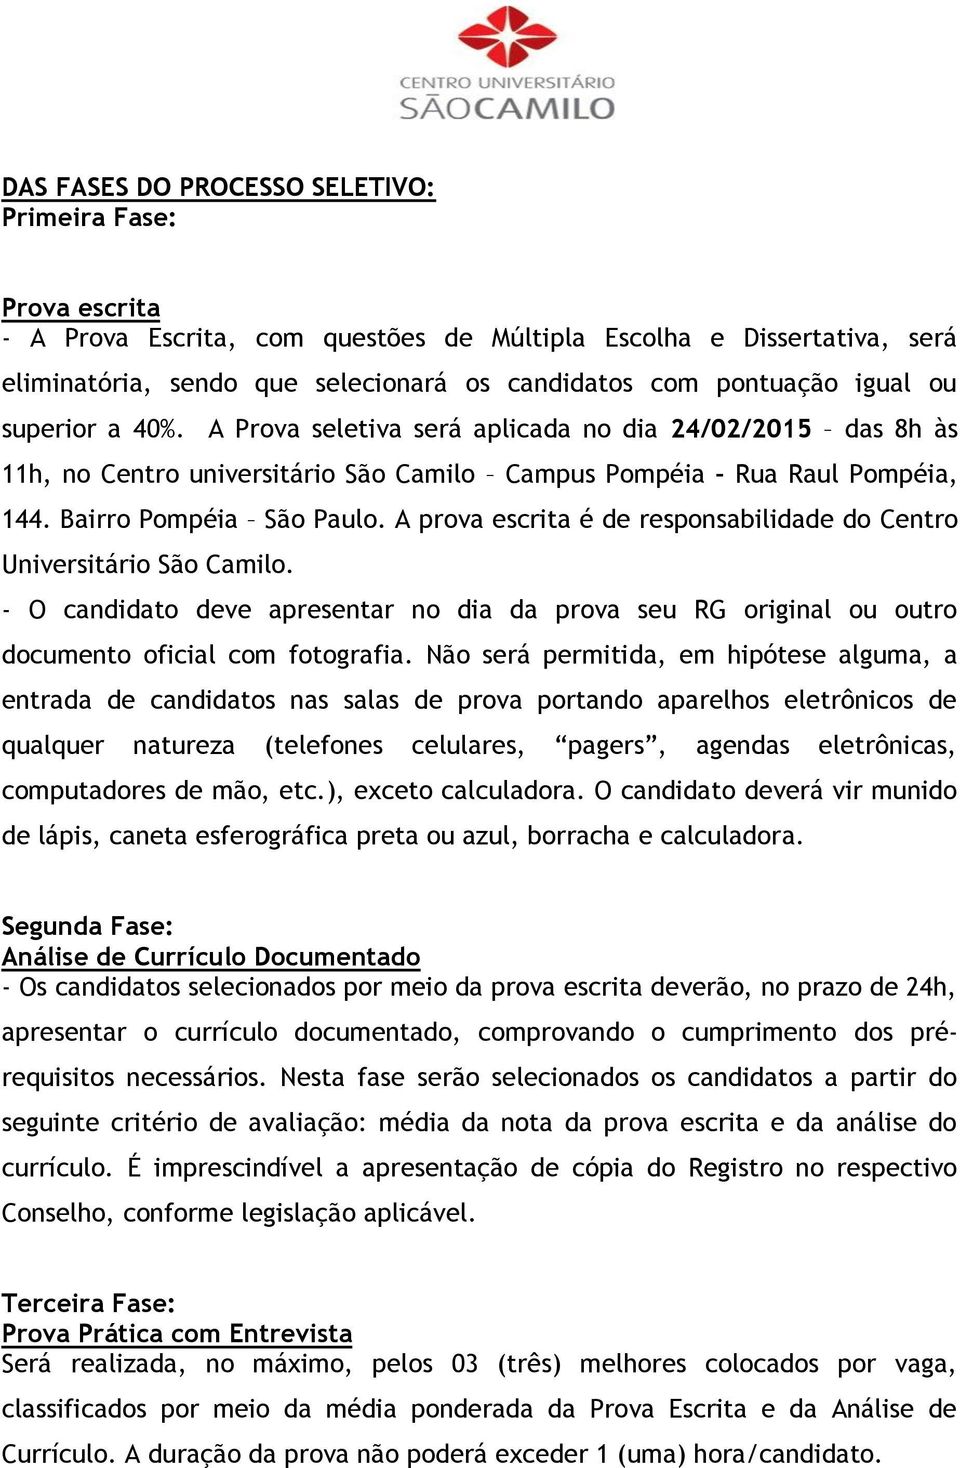 A prova escrita é de responsabilidade do Centro Universitário São Camilo. - O candidato deve apresentar no dia da prova seu RG original ou outro documento oficial com fotografia.